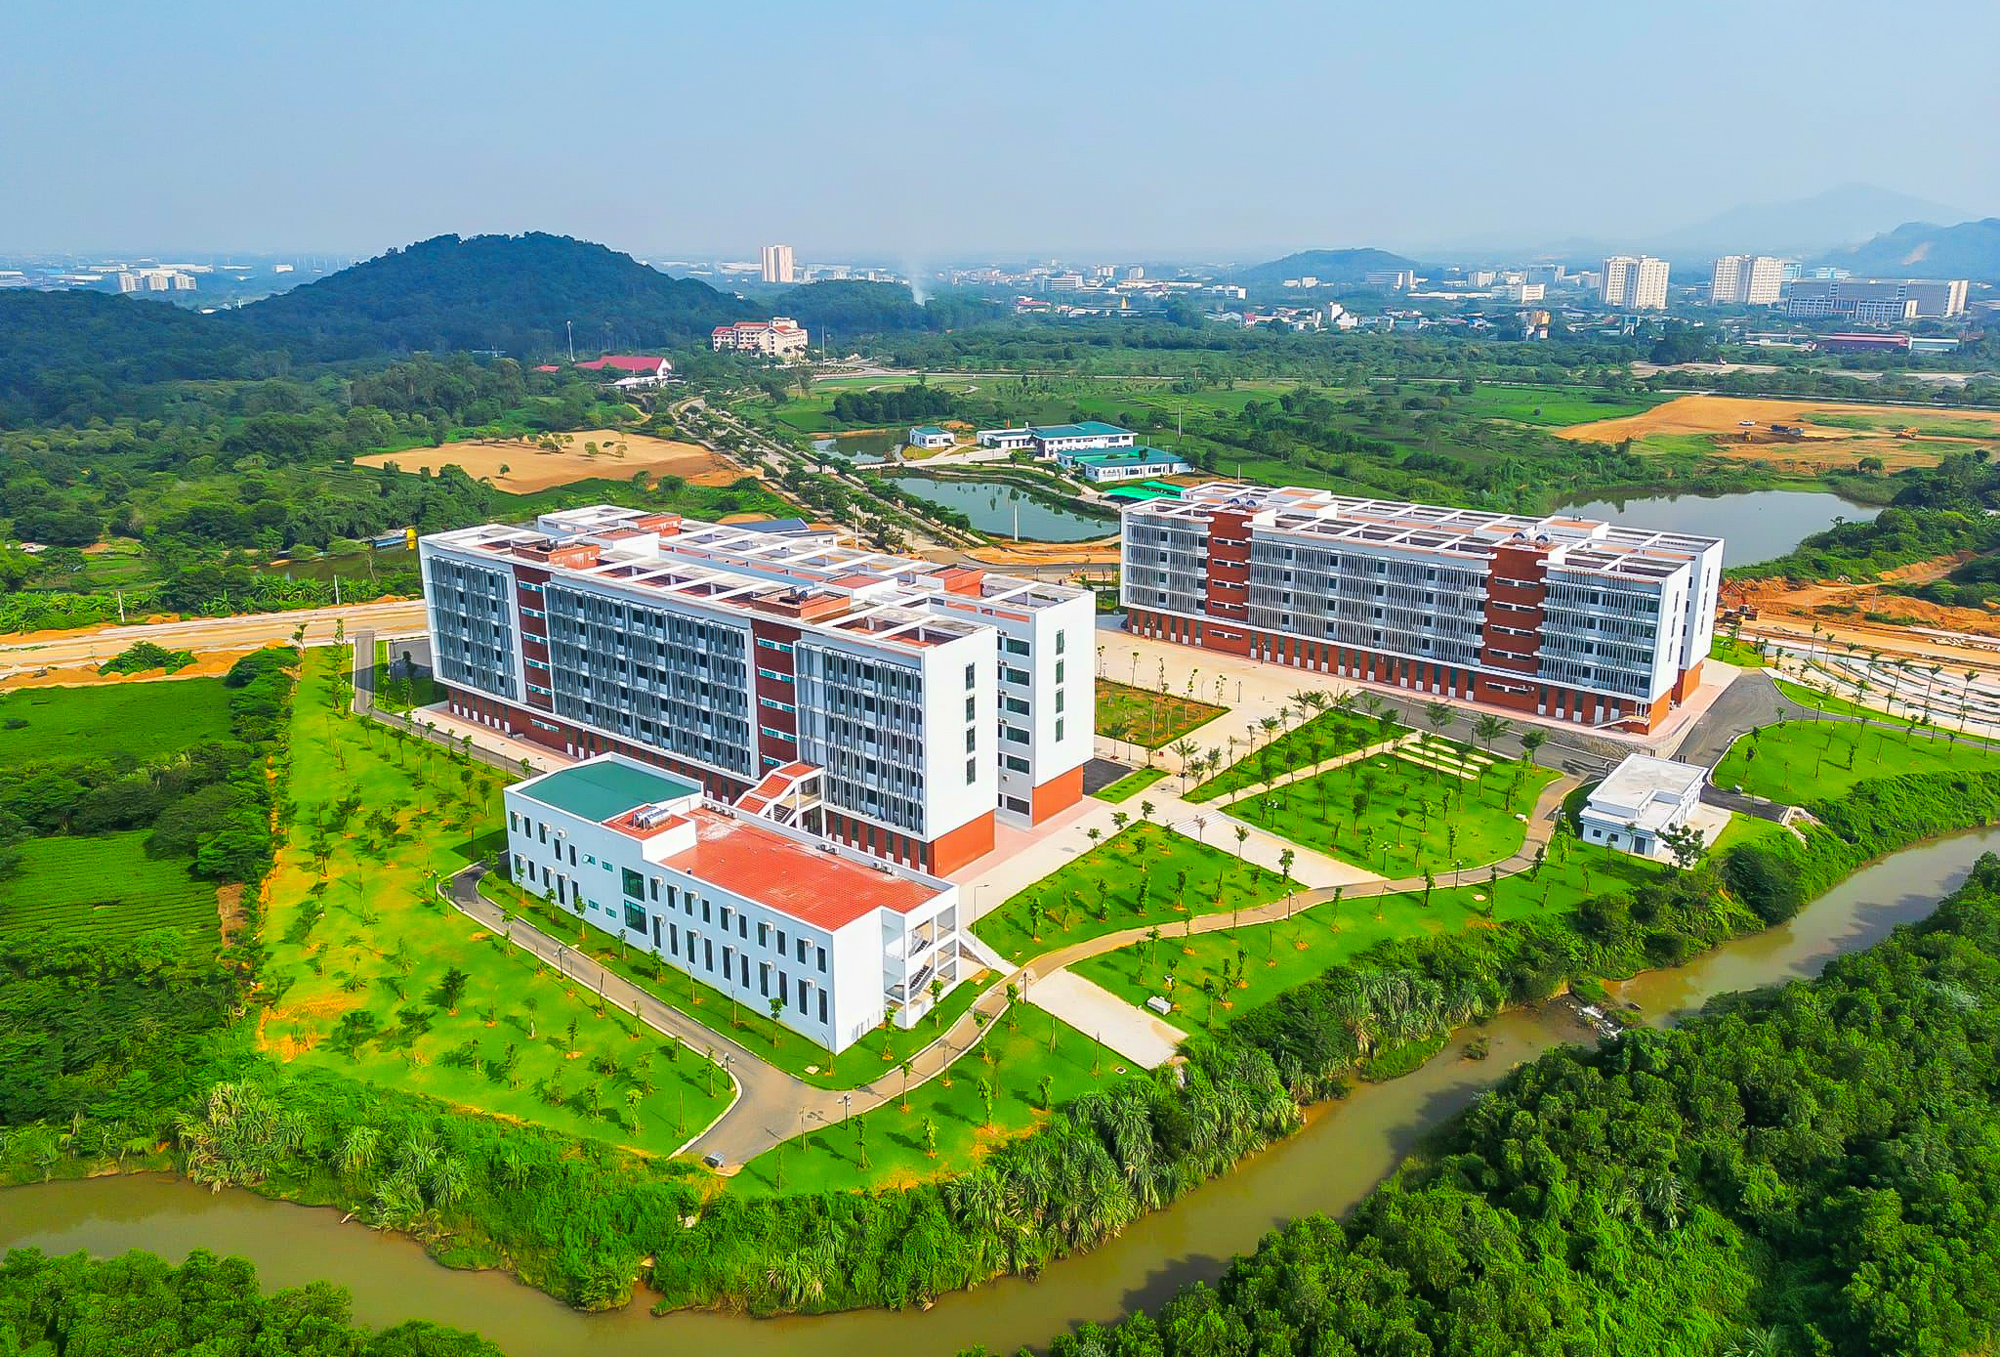 Đại học rộng nhất Việt Nam - diện tích gấp đôi quận Hoàn Kiếm, Hà Nội - Ảnh 4.